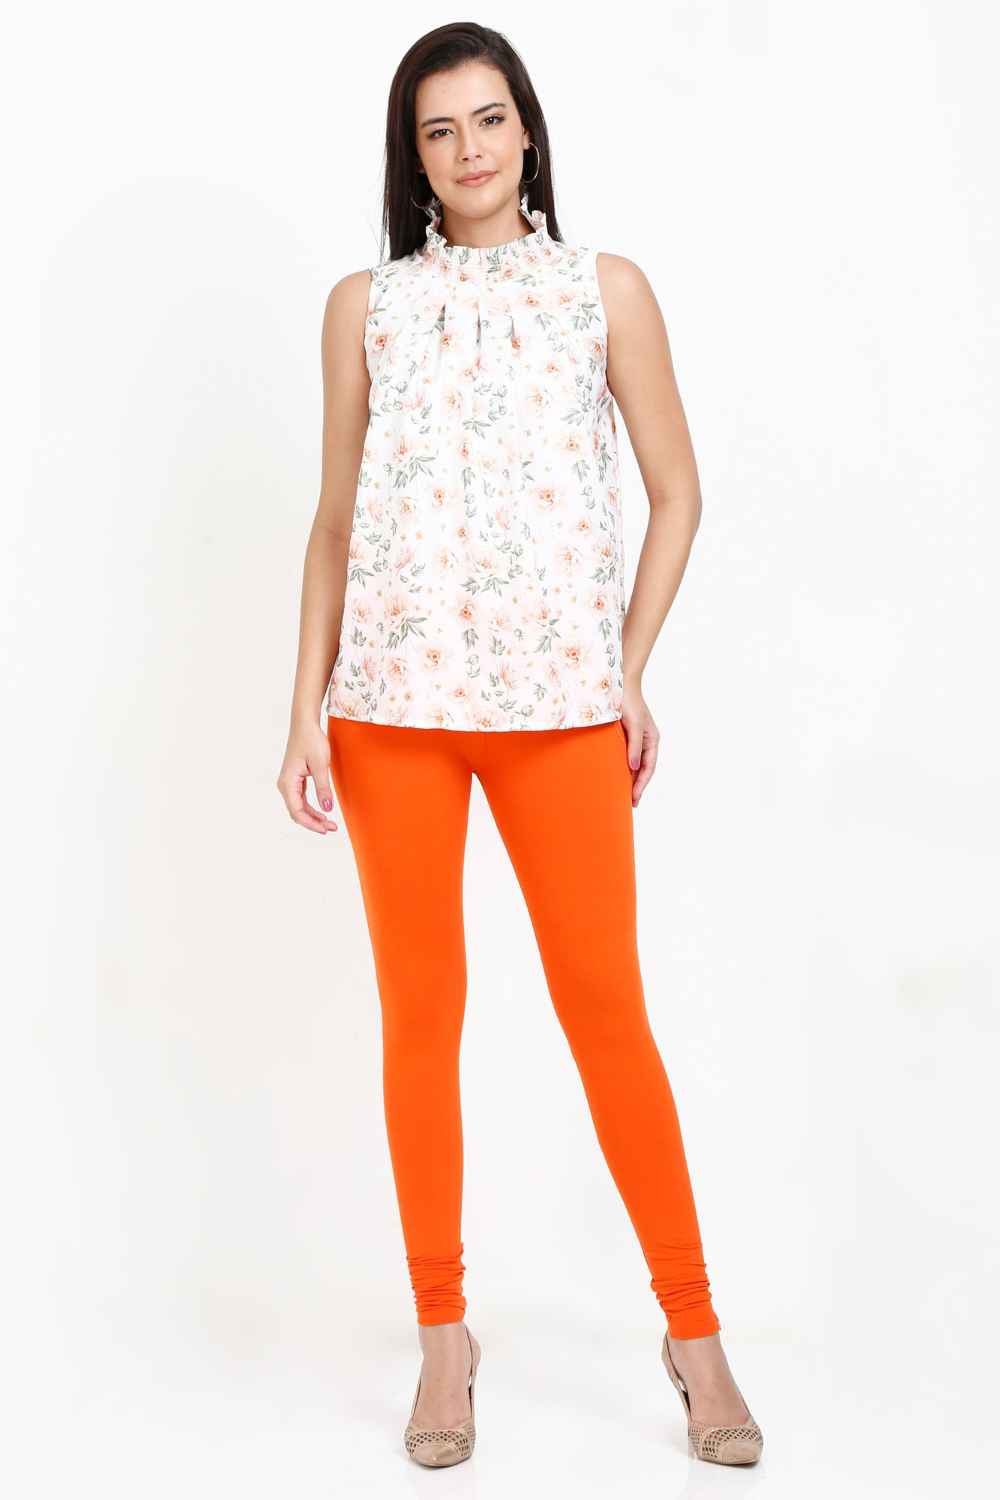 Women's Cotton Lycra Tiger Pink Full length legging | sandgrouse 